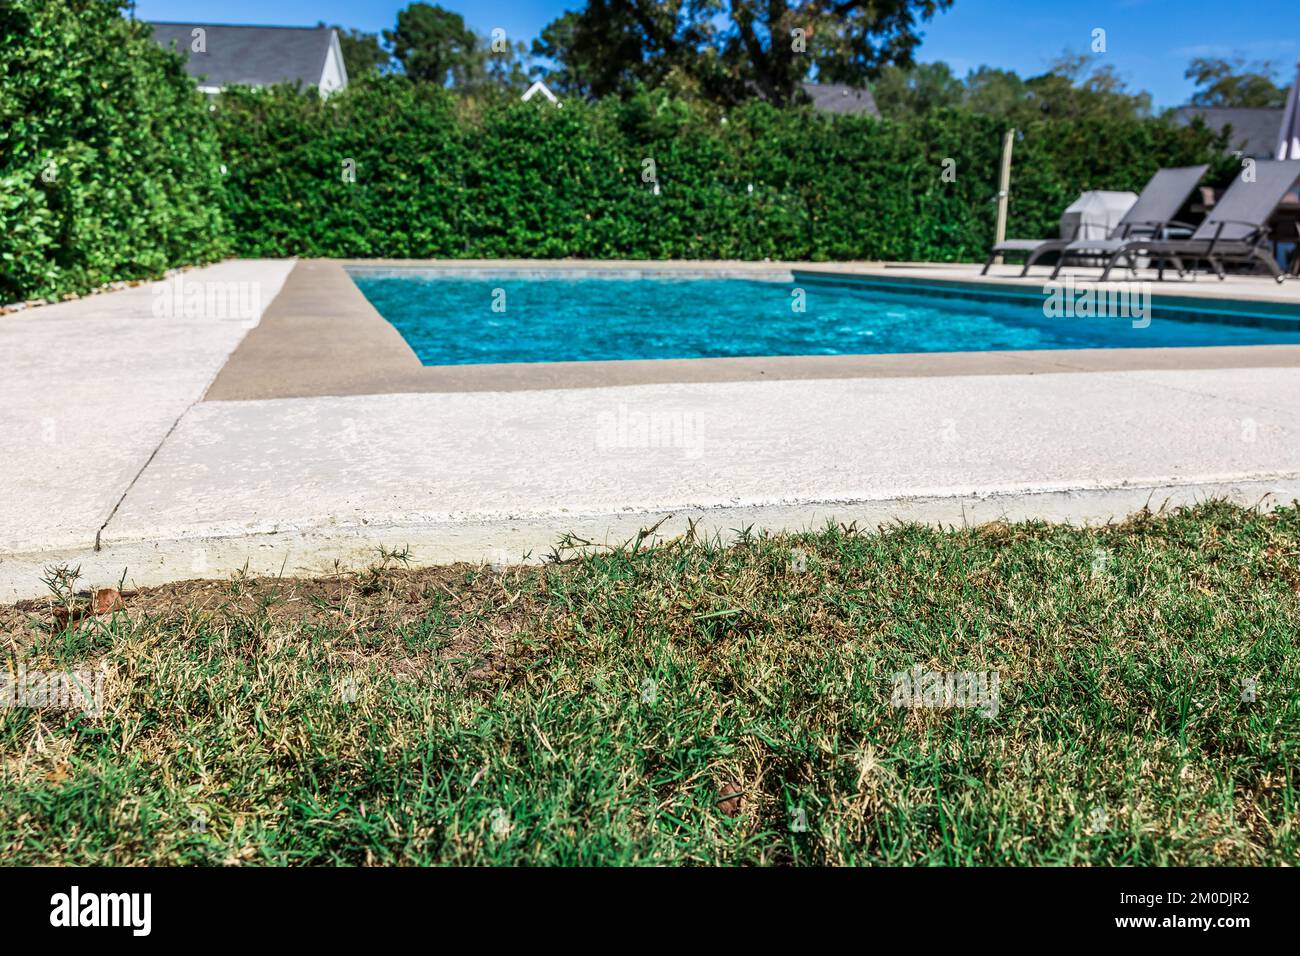 Ein rechteckiger neuer Swimmingpool mit hellbraunen Betonkanten im eingezäunten Garten eines neuen Bauhauses Stockfoto